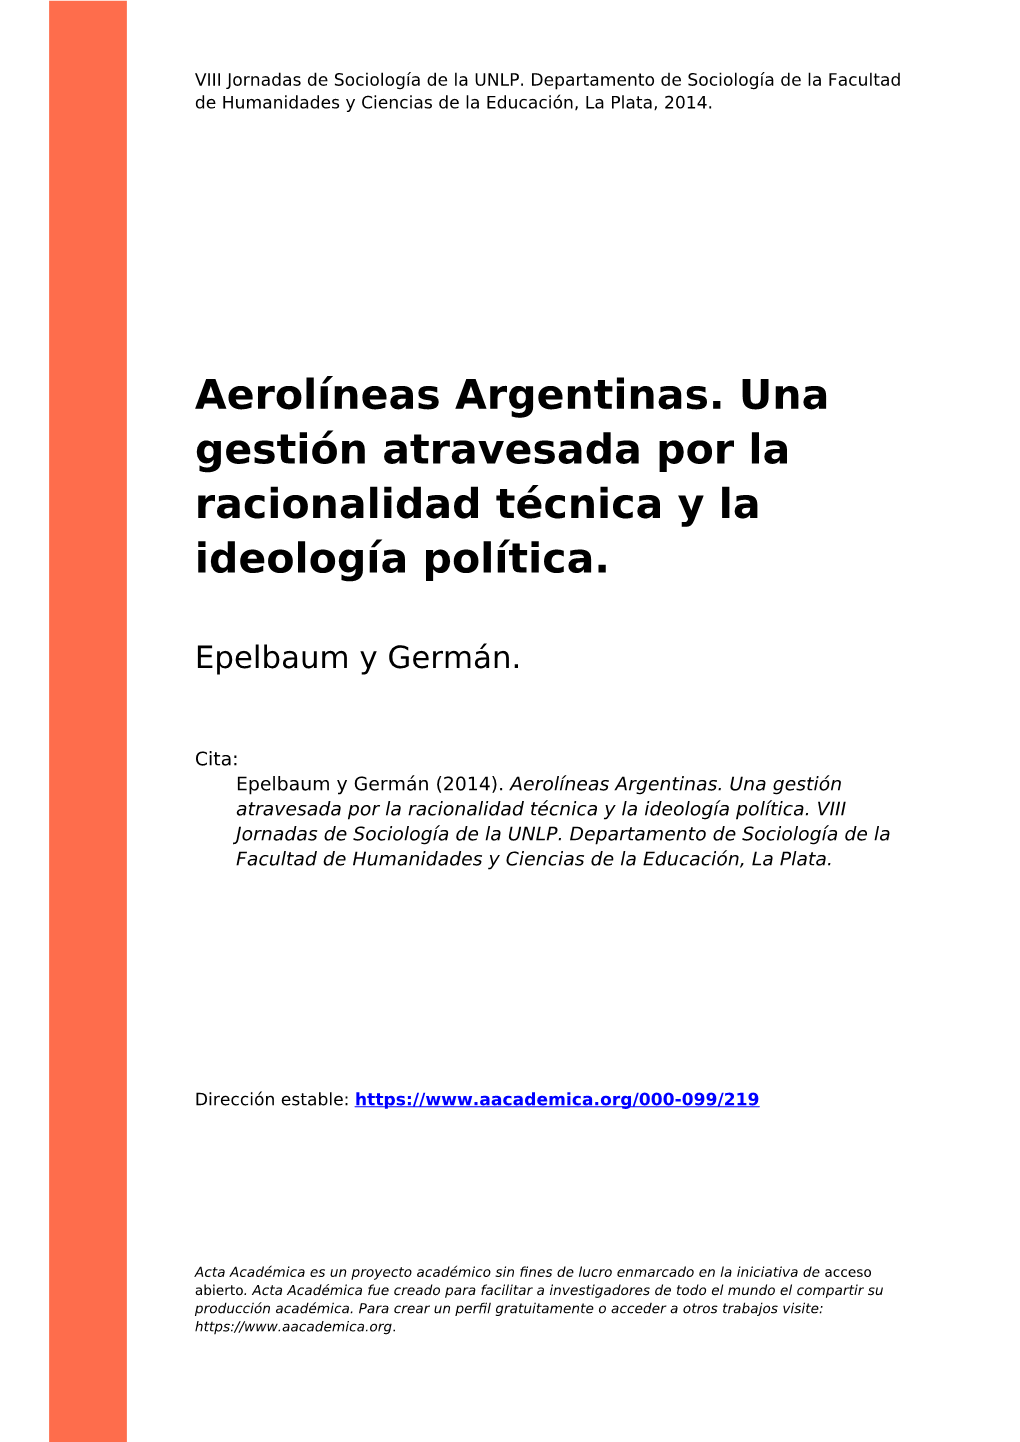 Aerolíneas Argentinas. Una Gestión Atravesada Por La Racionalidad Técnica Y La Ideología Política